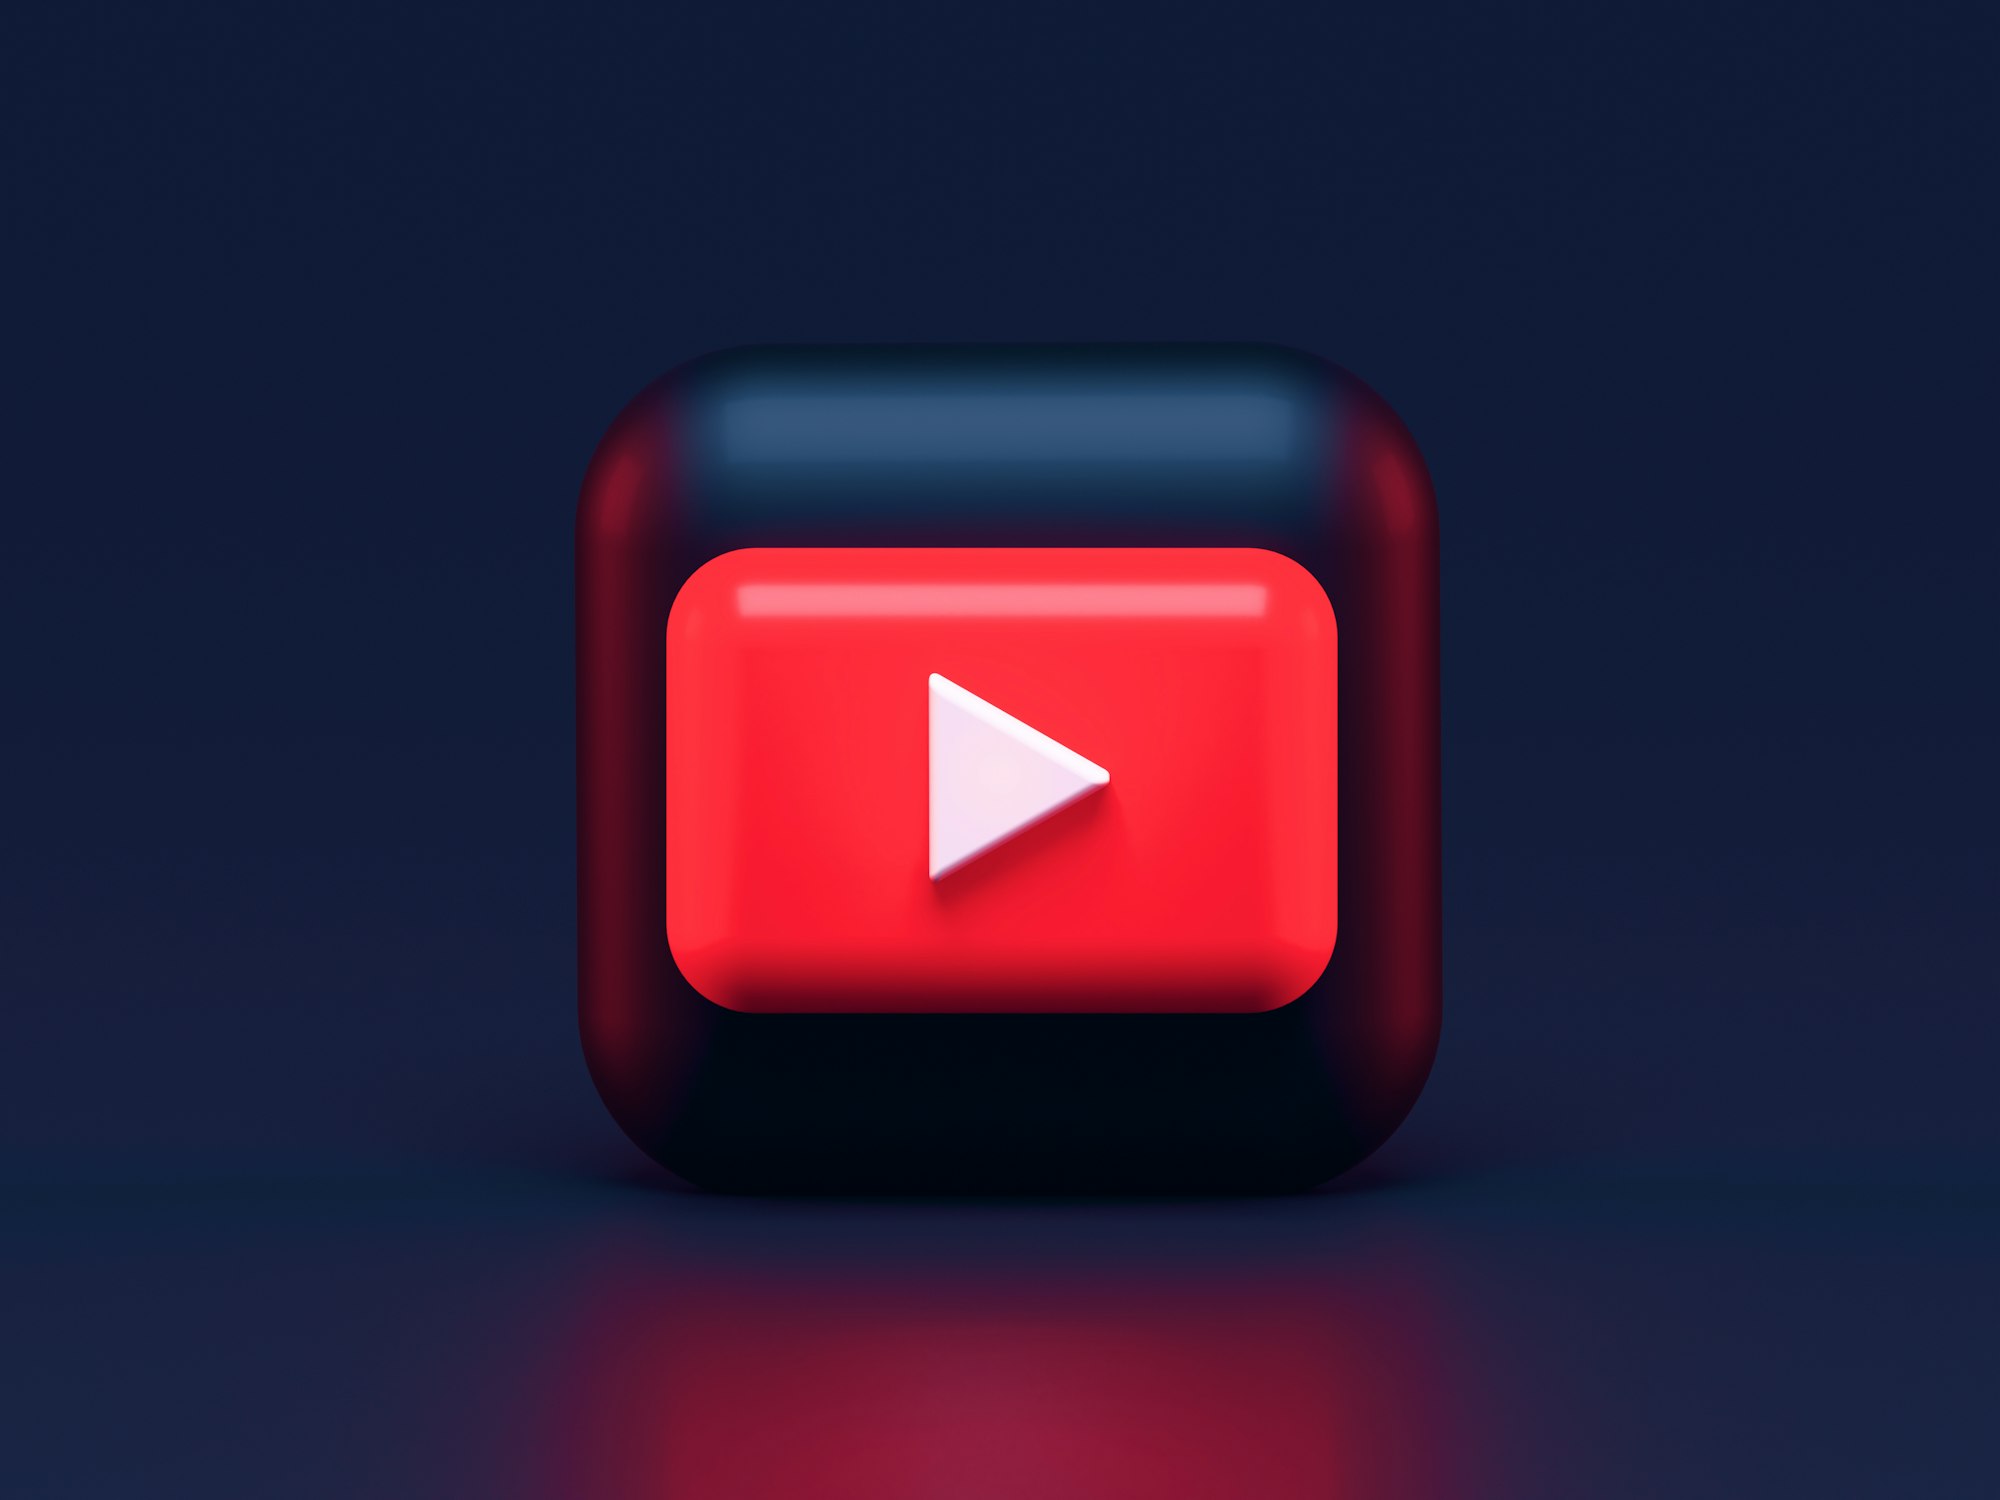 YouTube 4000 saat izlenmeye reklamlar dahil mi?